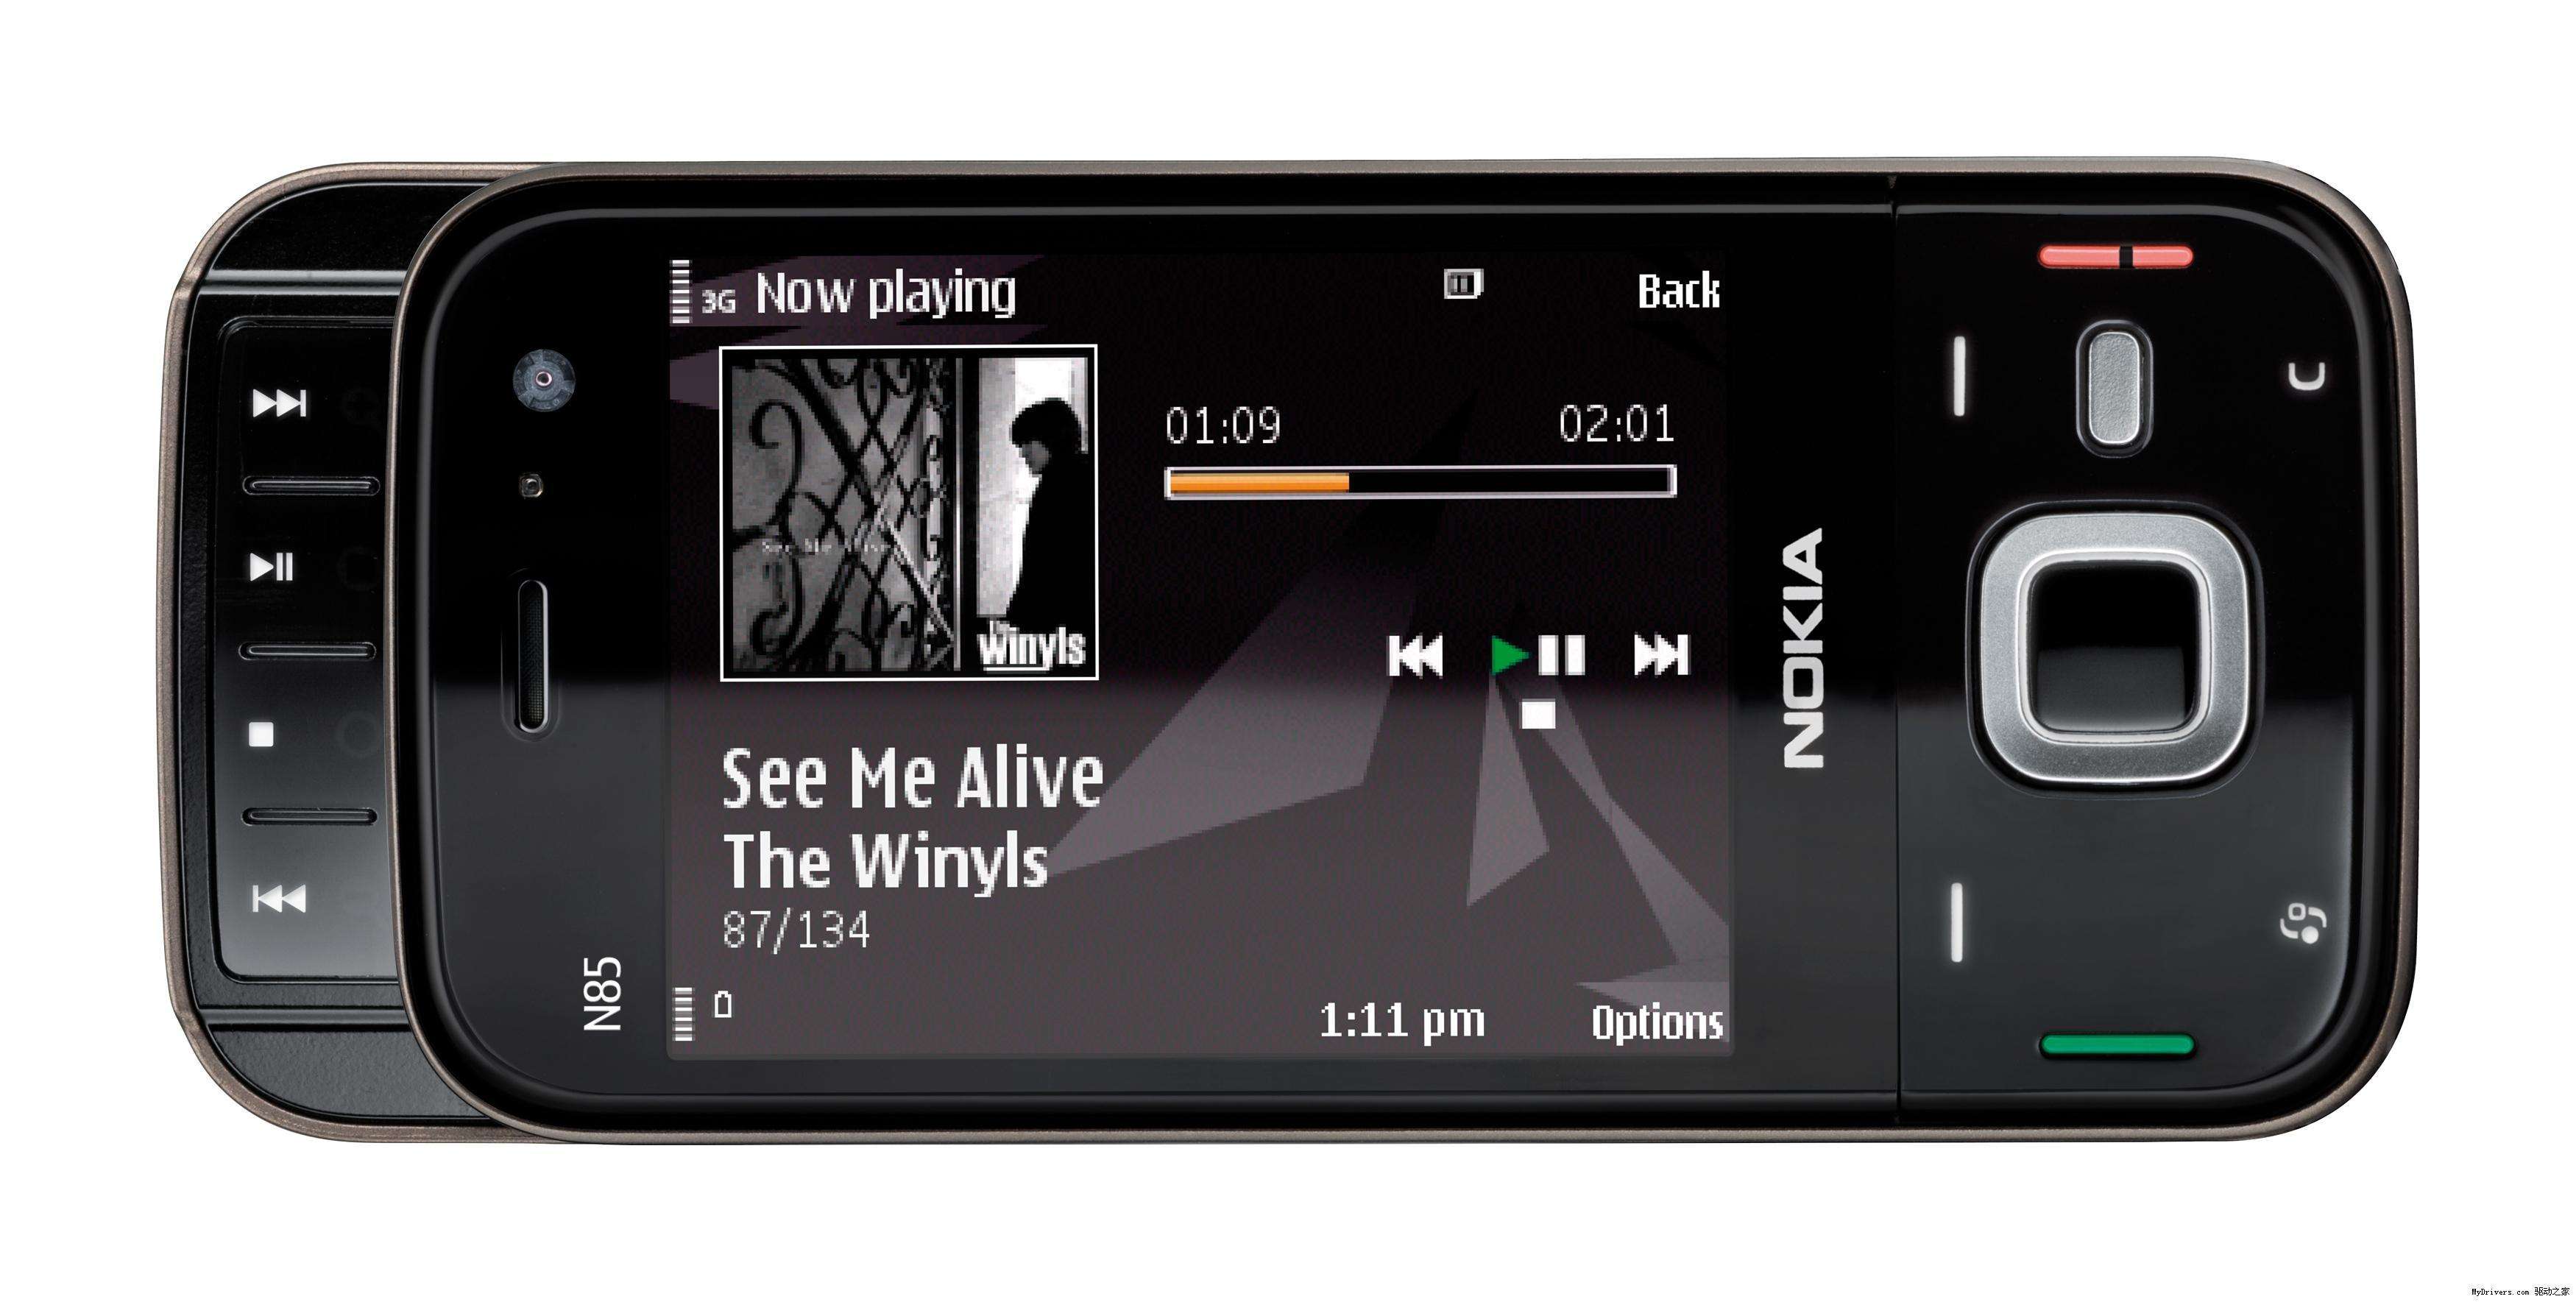 诺基亚N95概念机图片